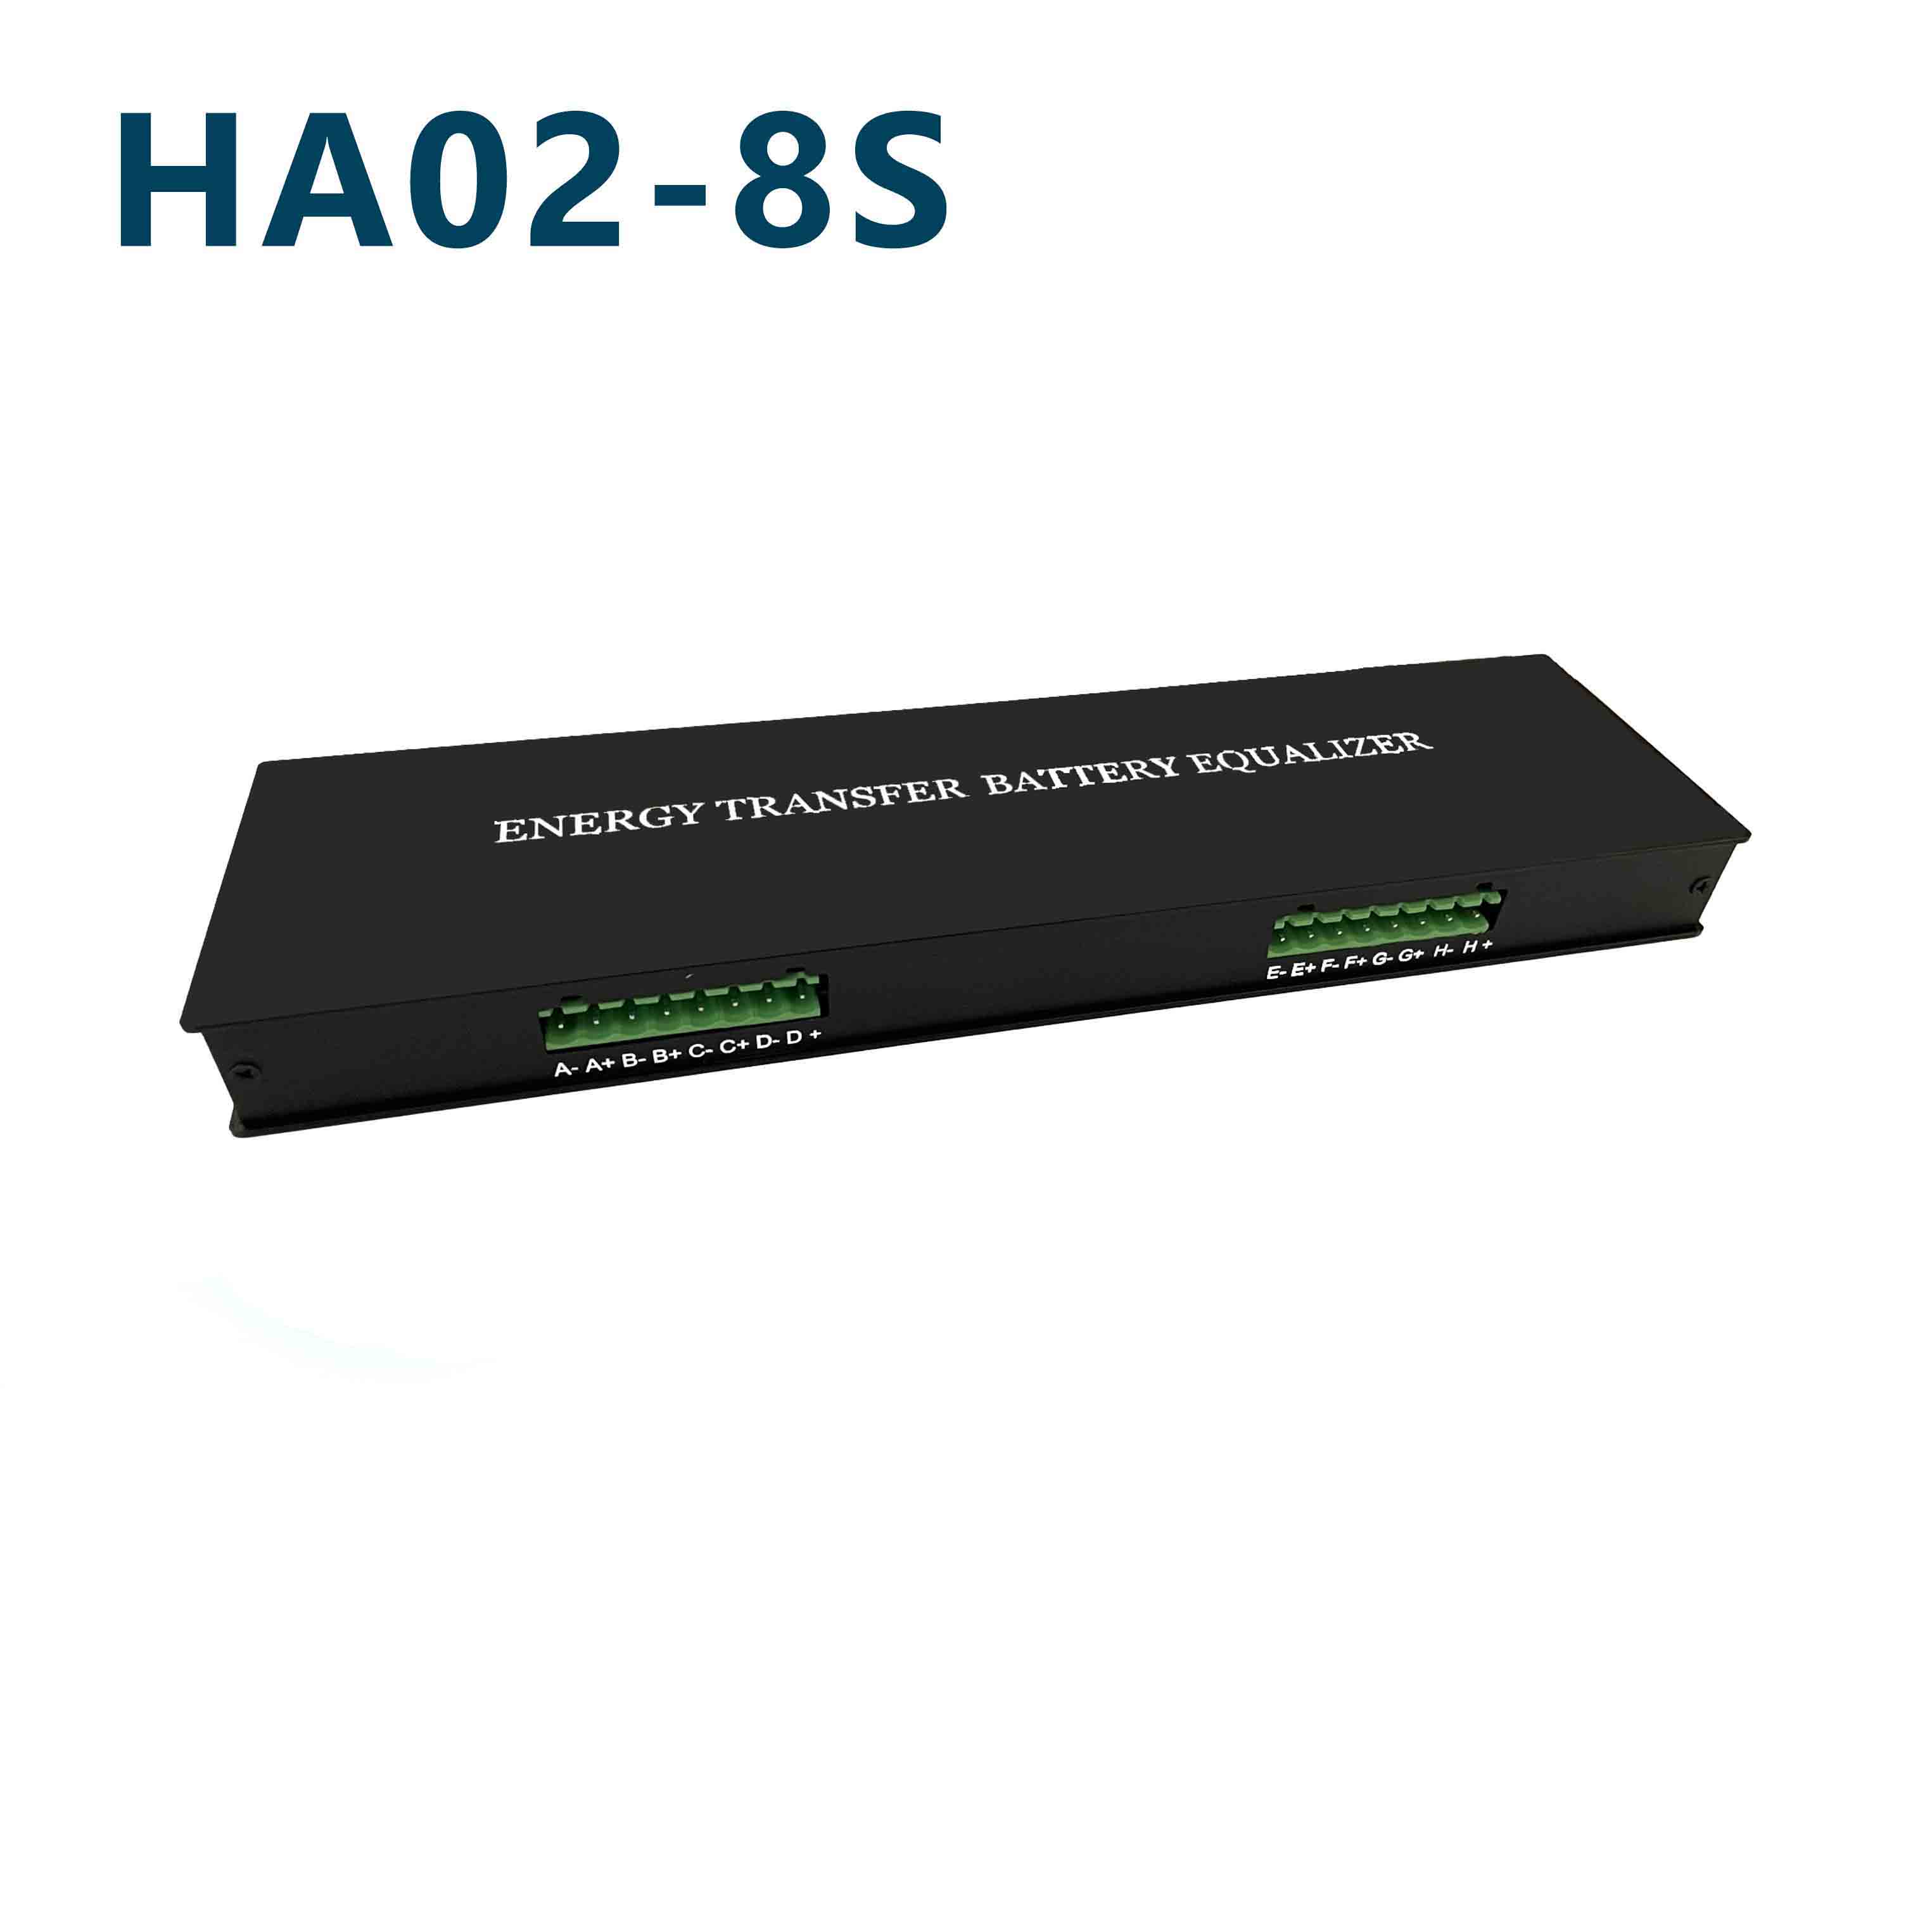 HA02-8S